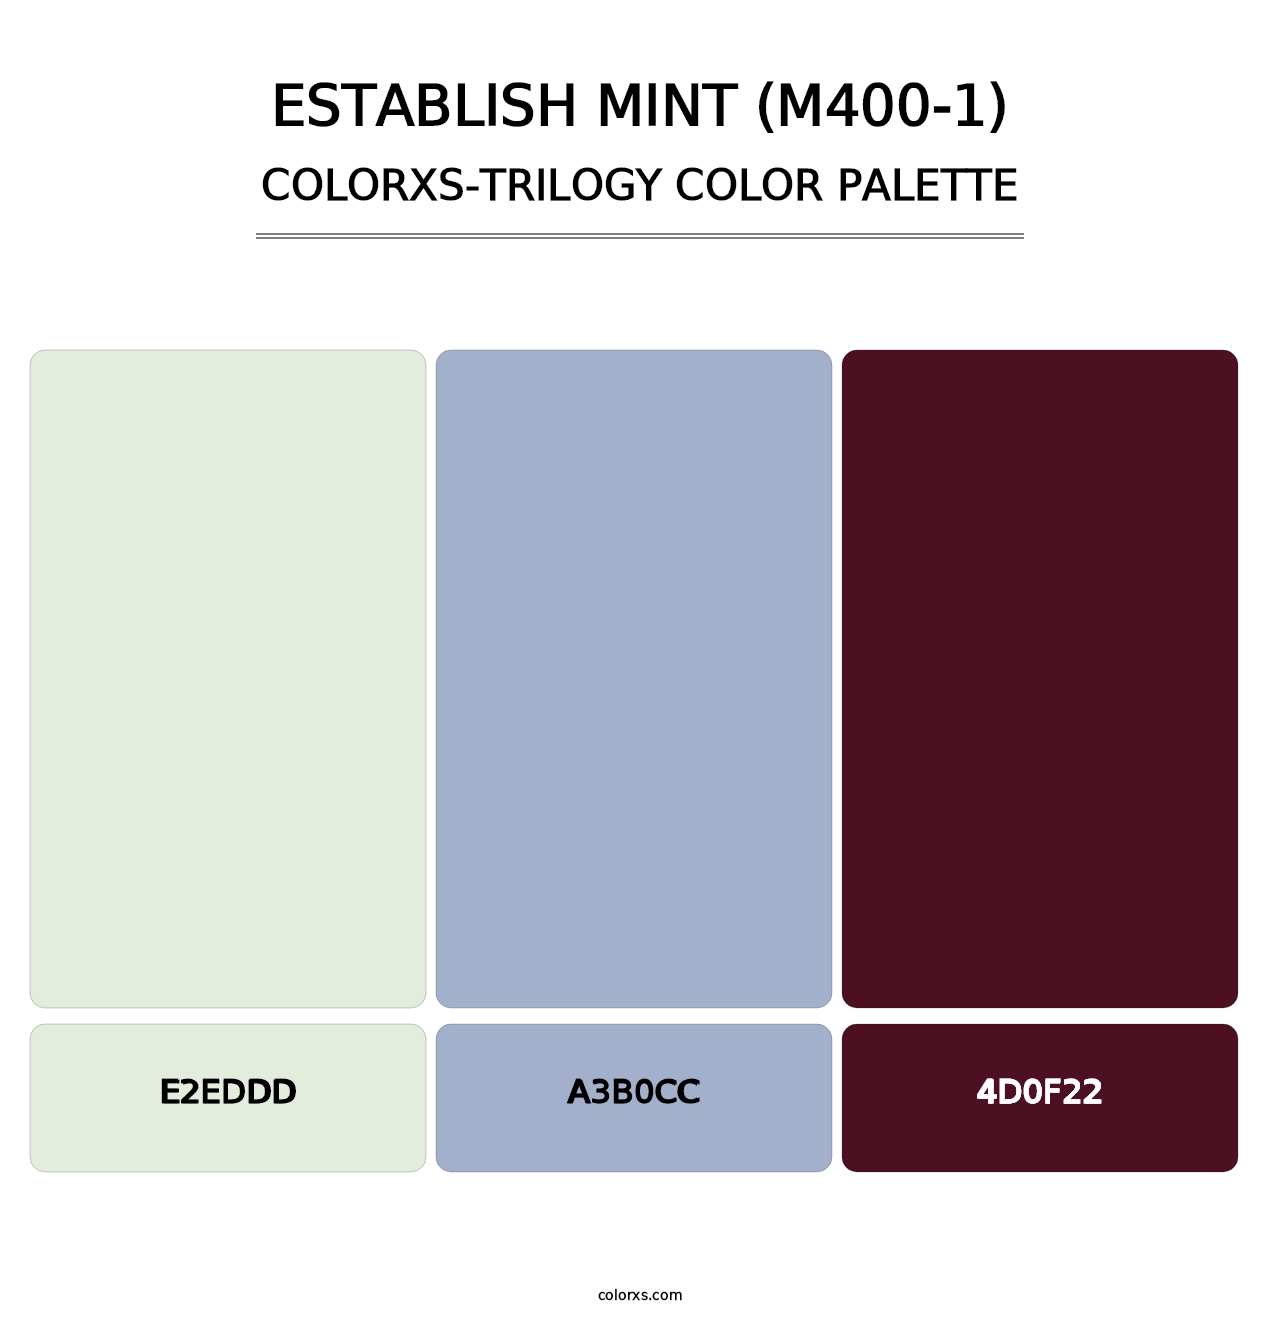 Establish Mint (M400-1) - Colorxs Trilogy Palette